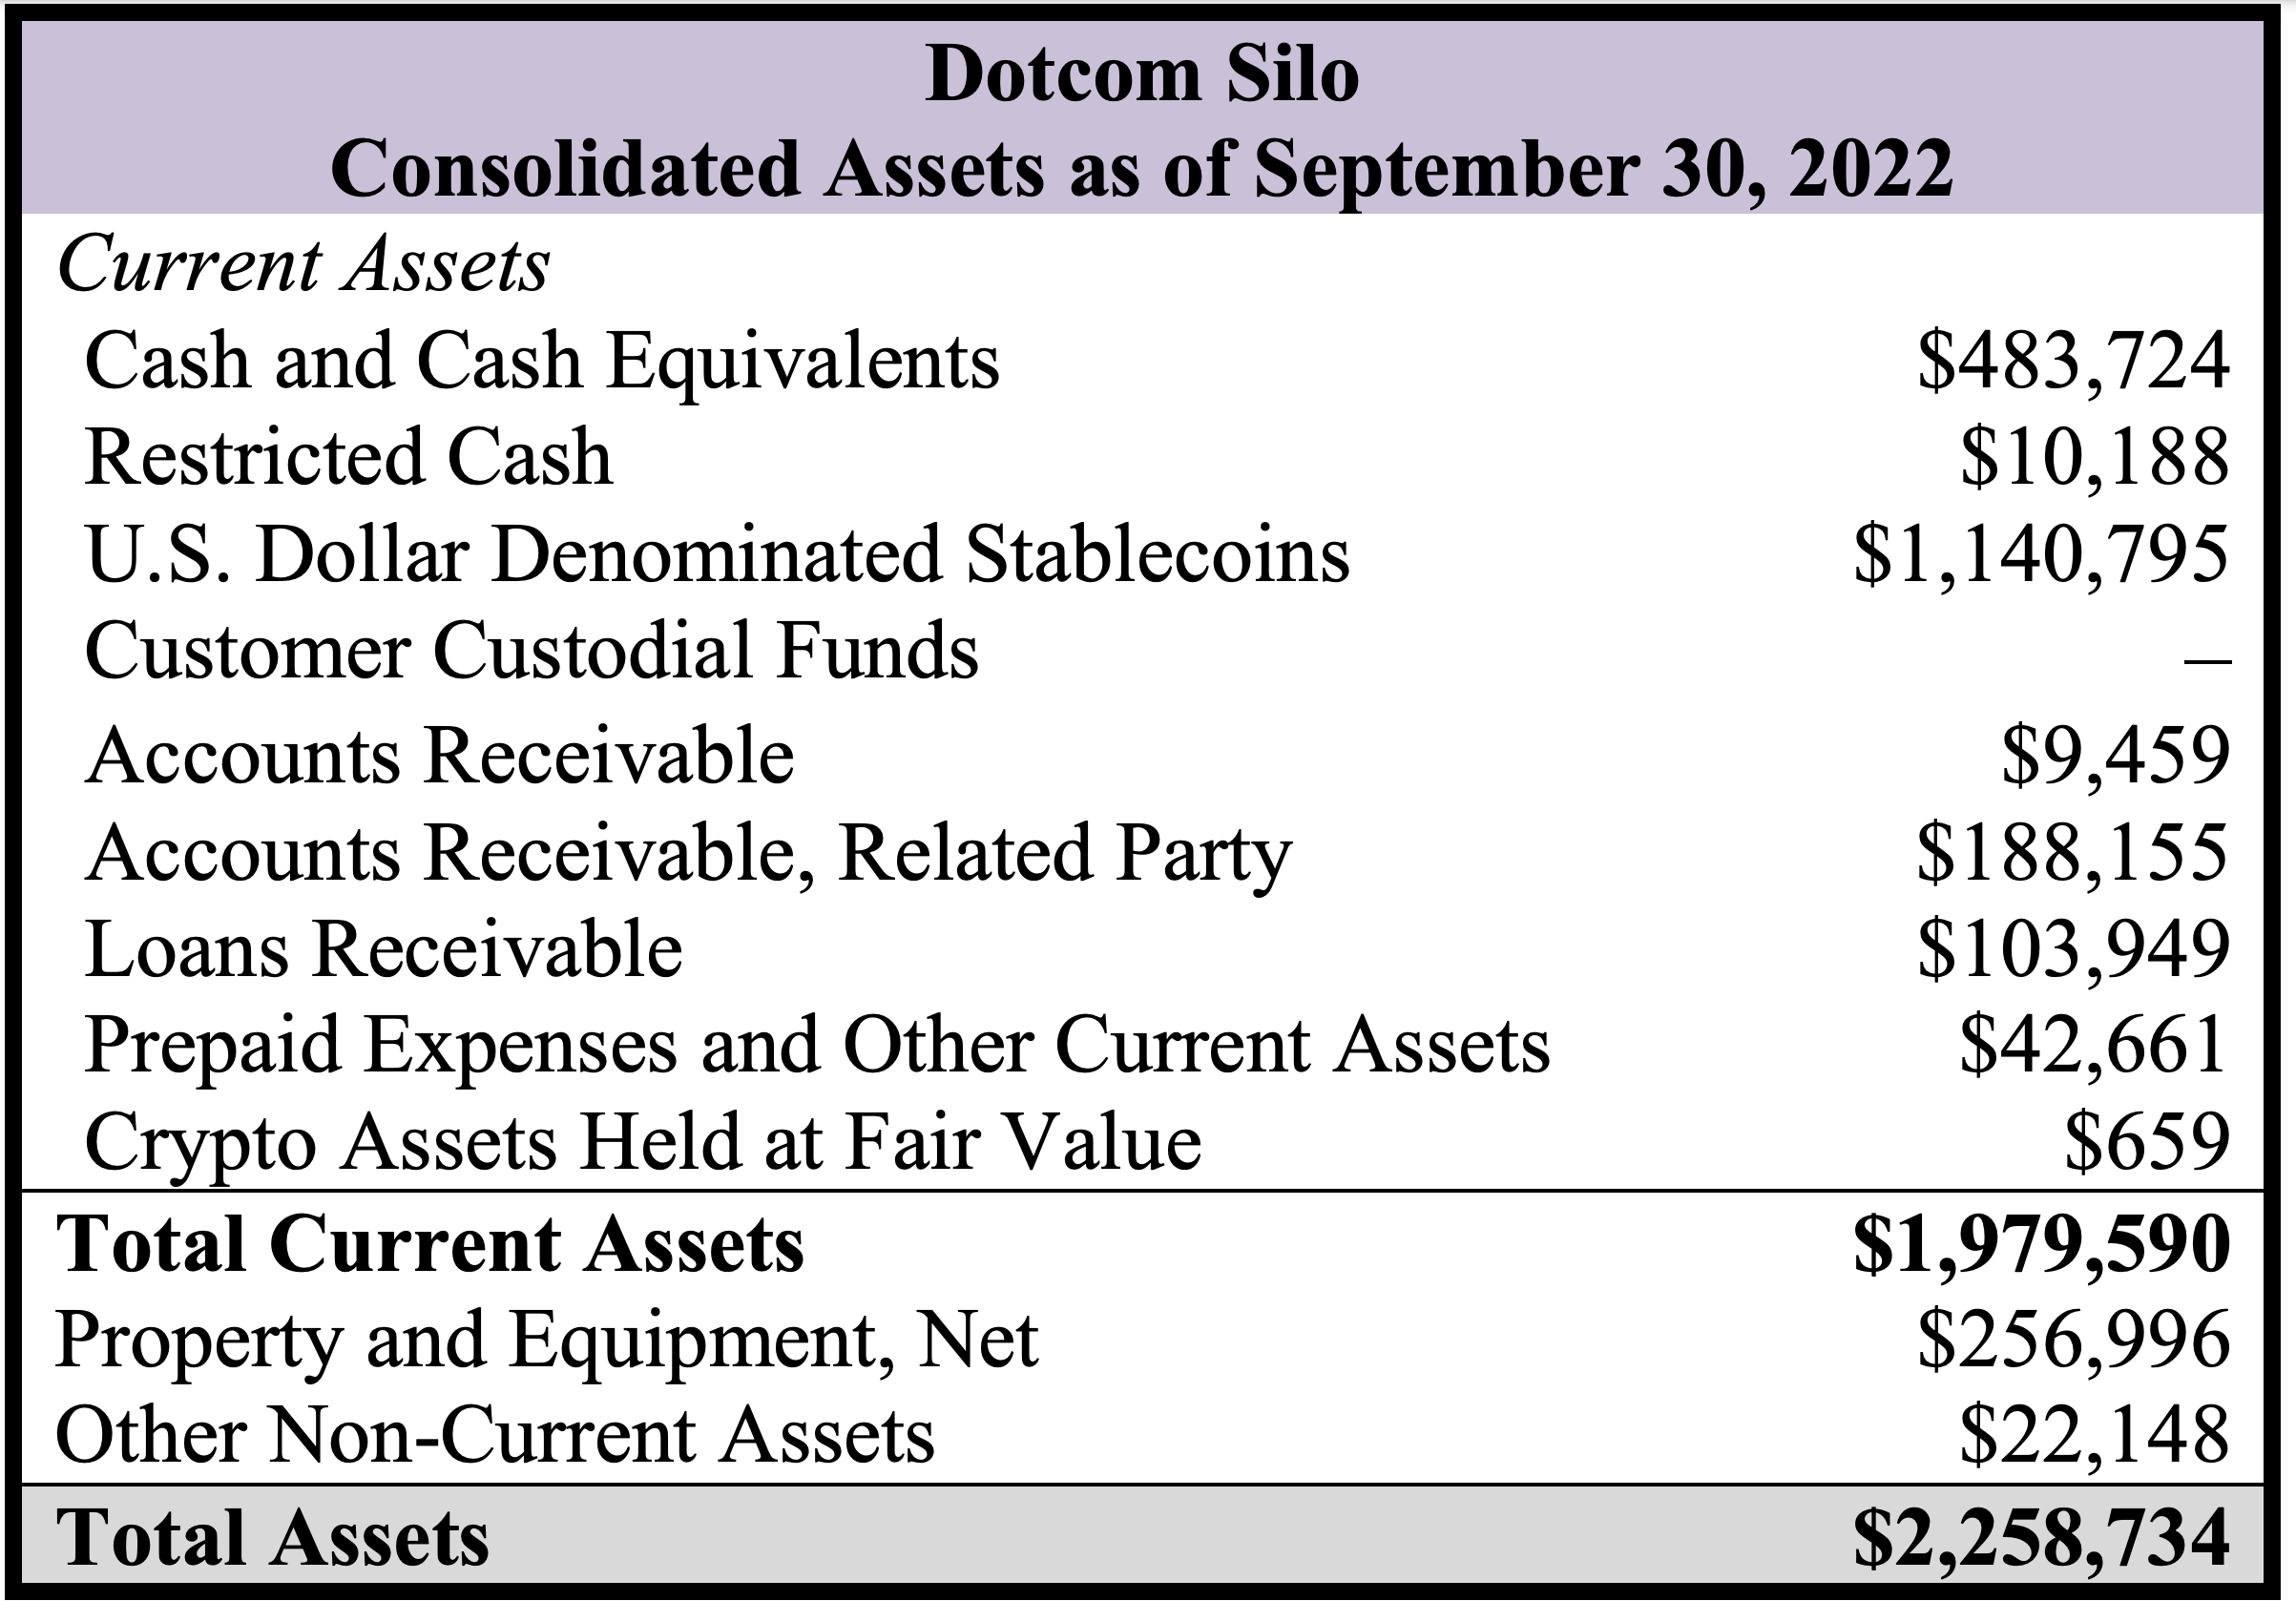 Dotcom Silo - Assets as of September 30, 2022